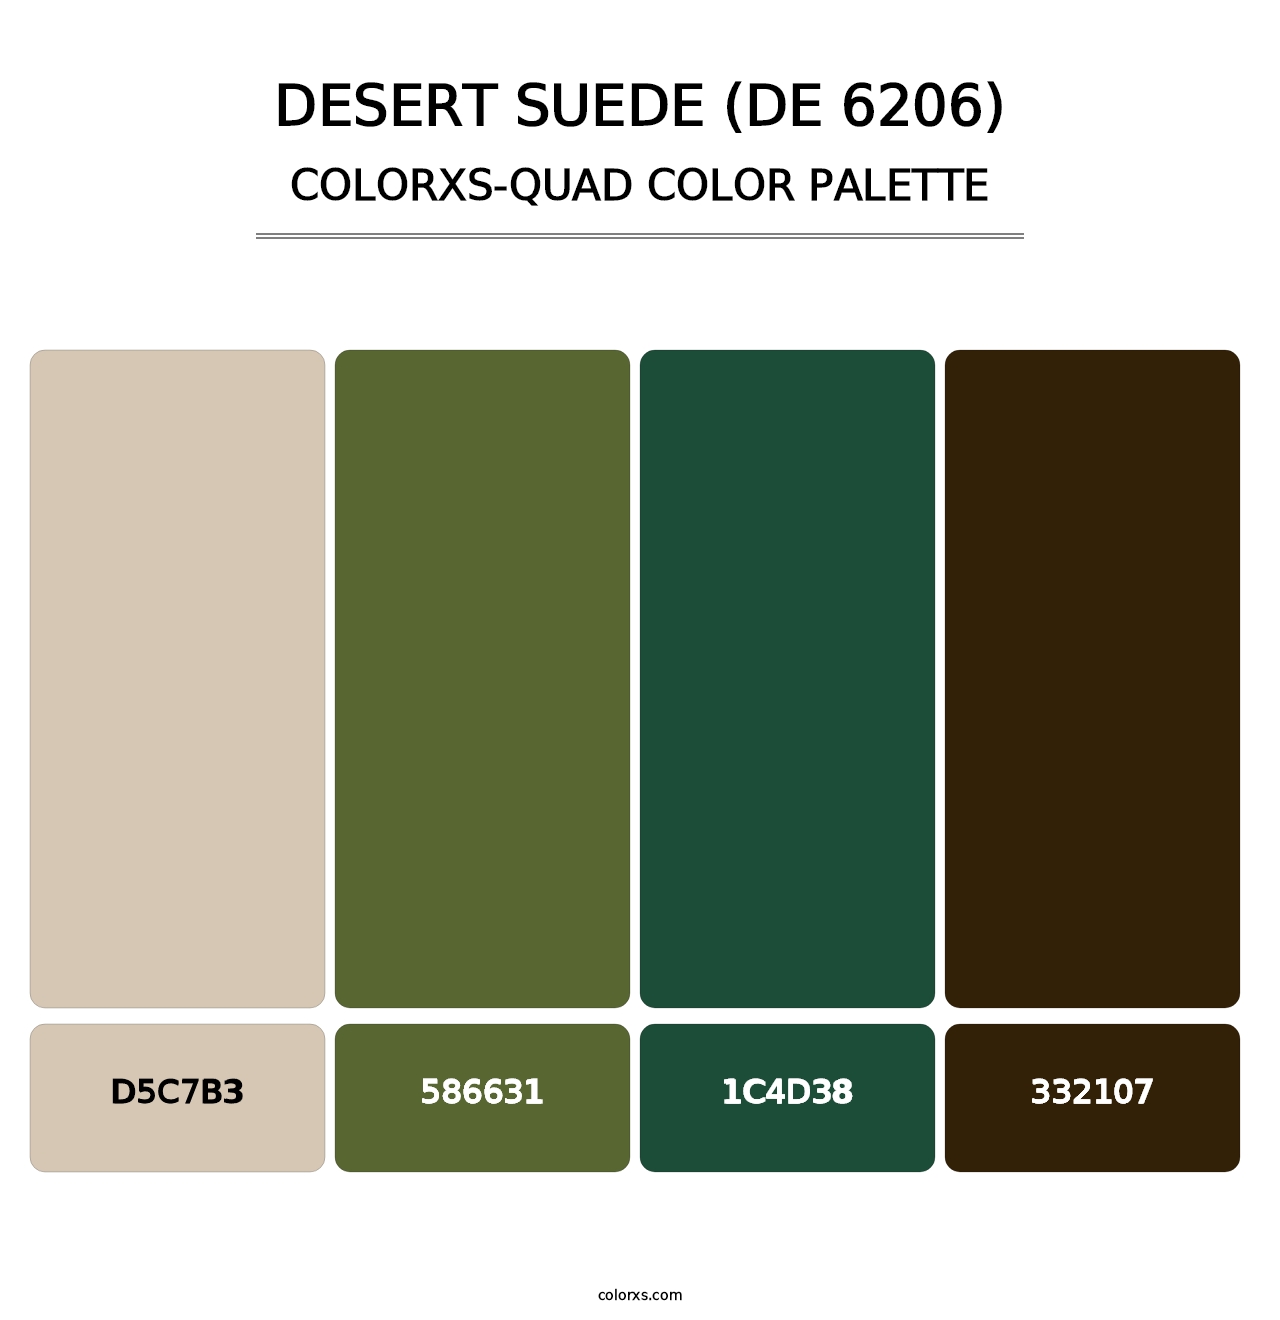 Desert Suede (DE 6206) - Colorxs Quad Palette